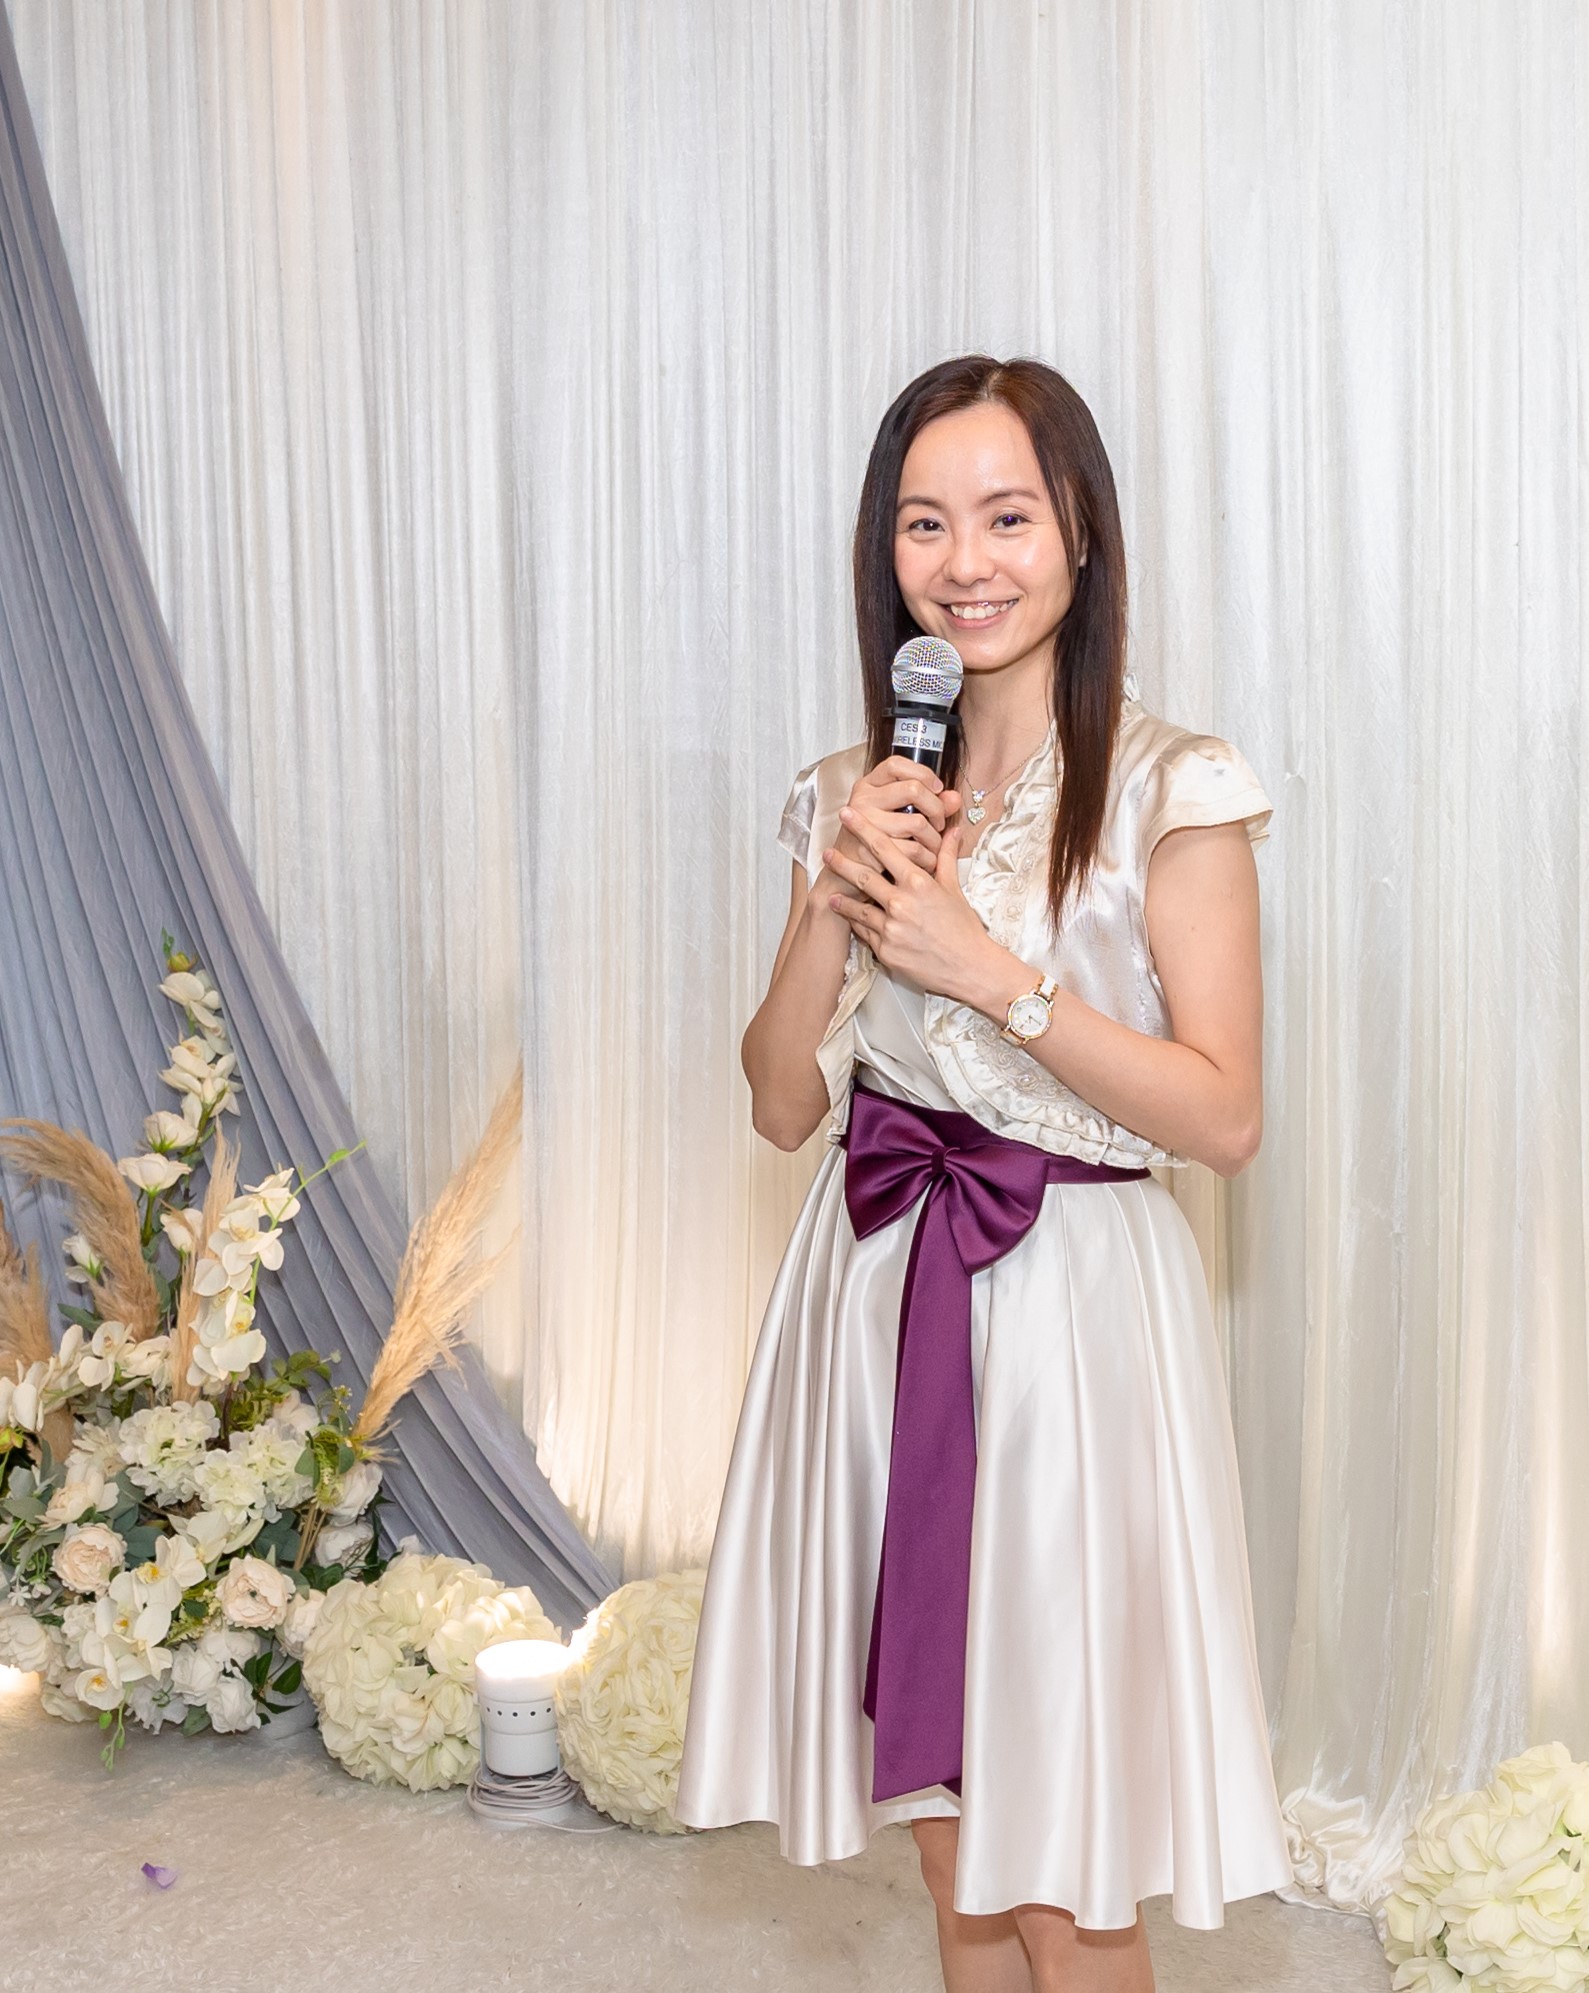 婚禮統籌培訓推介: Bless Wedding 首席婚禮統籌及司儀 Angel Leung